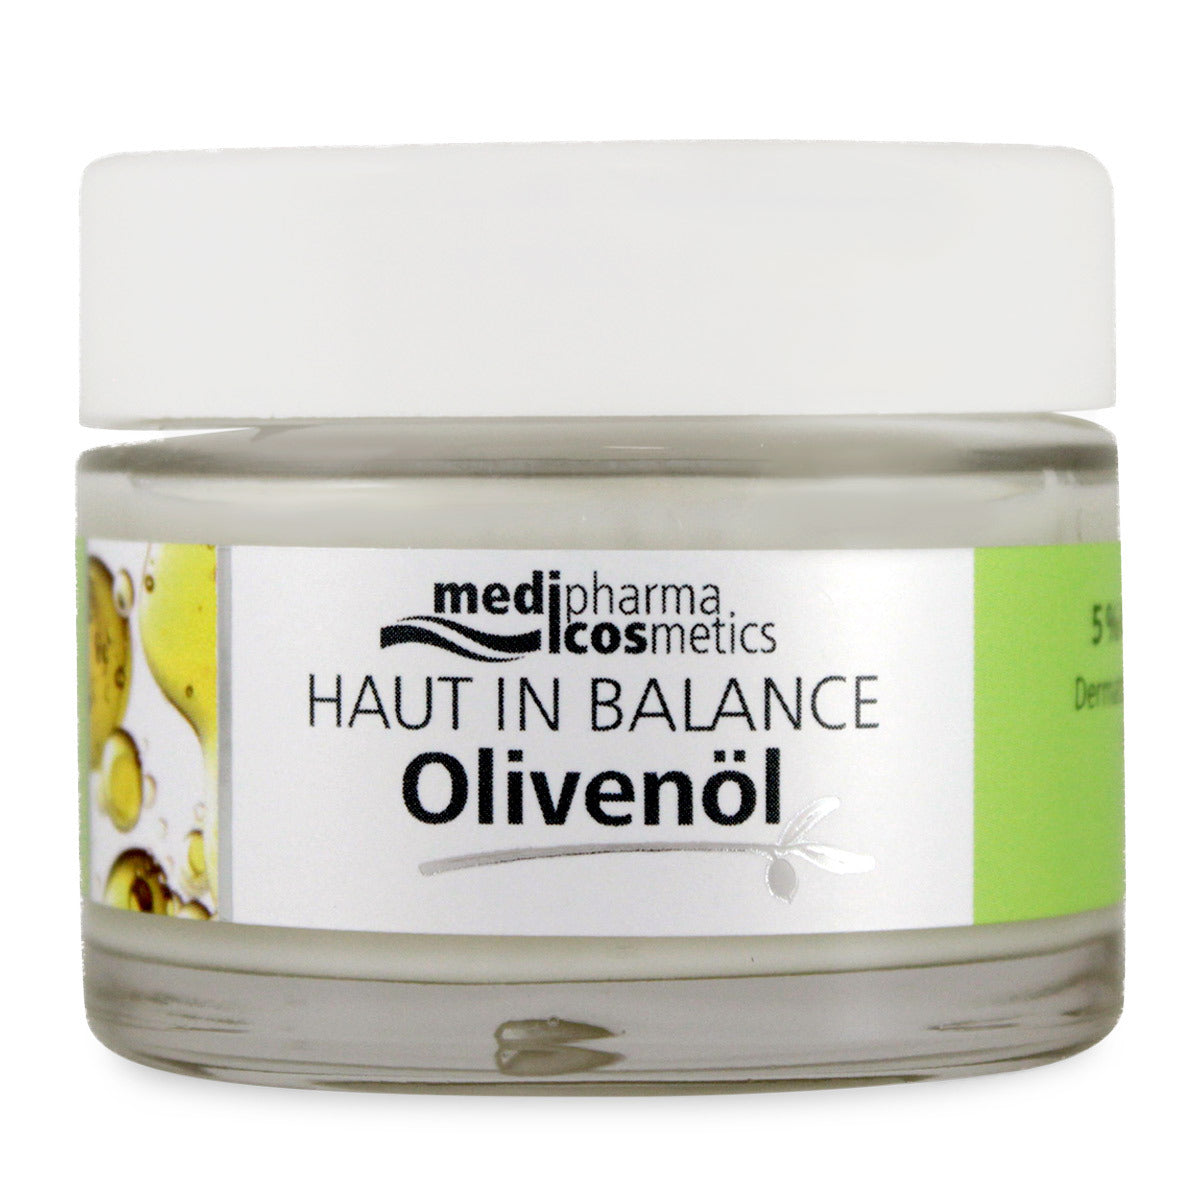 Primary image of Olivenol Haut In Balance Olive Oil + Urea Face Cream